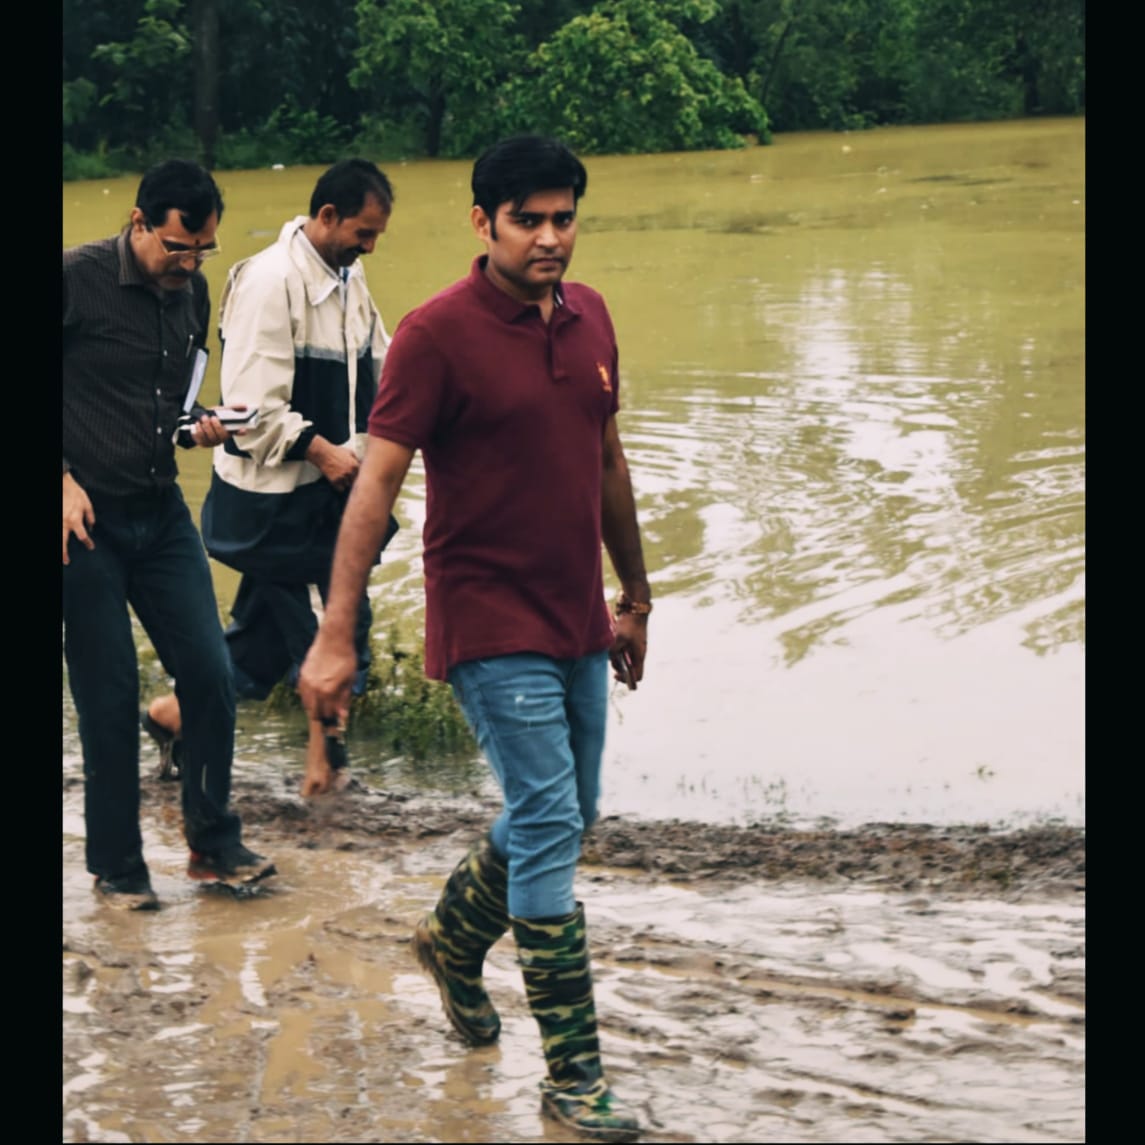 बिहार के चर्चित जिलाधिकारी डा० रणजीत कुमार सिंह,संभाल रहे है बाढ़ राहत एवं बचाव कार्य की कमान,अपने कामो की वजह से हमेशा रहते है चर्चा मे-देखे विडियो